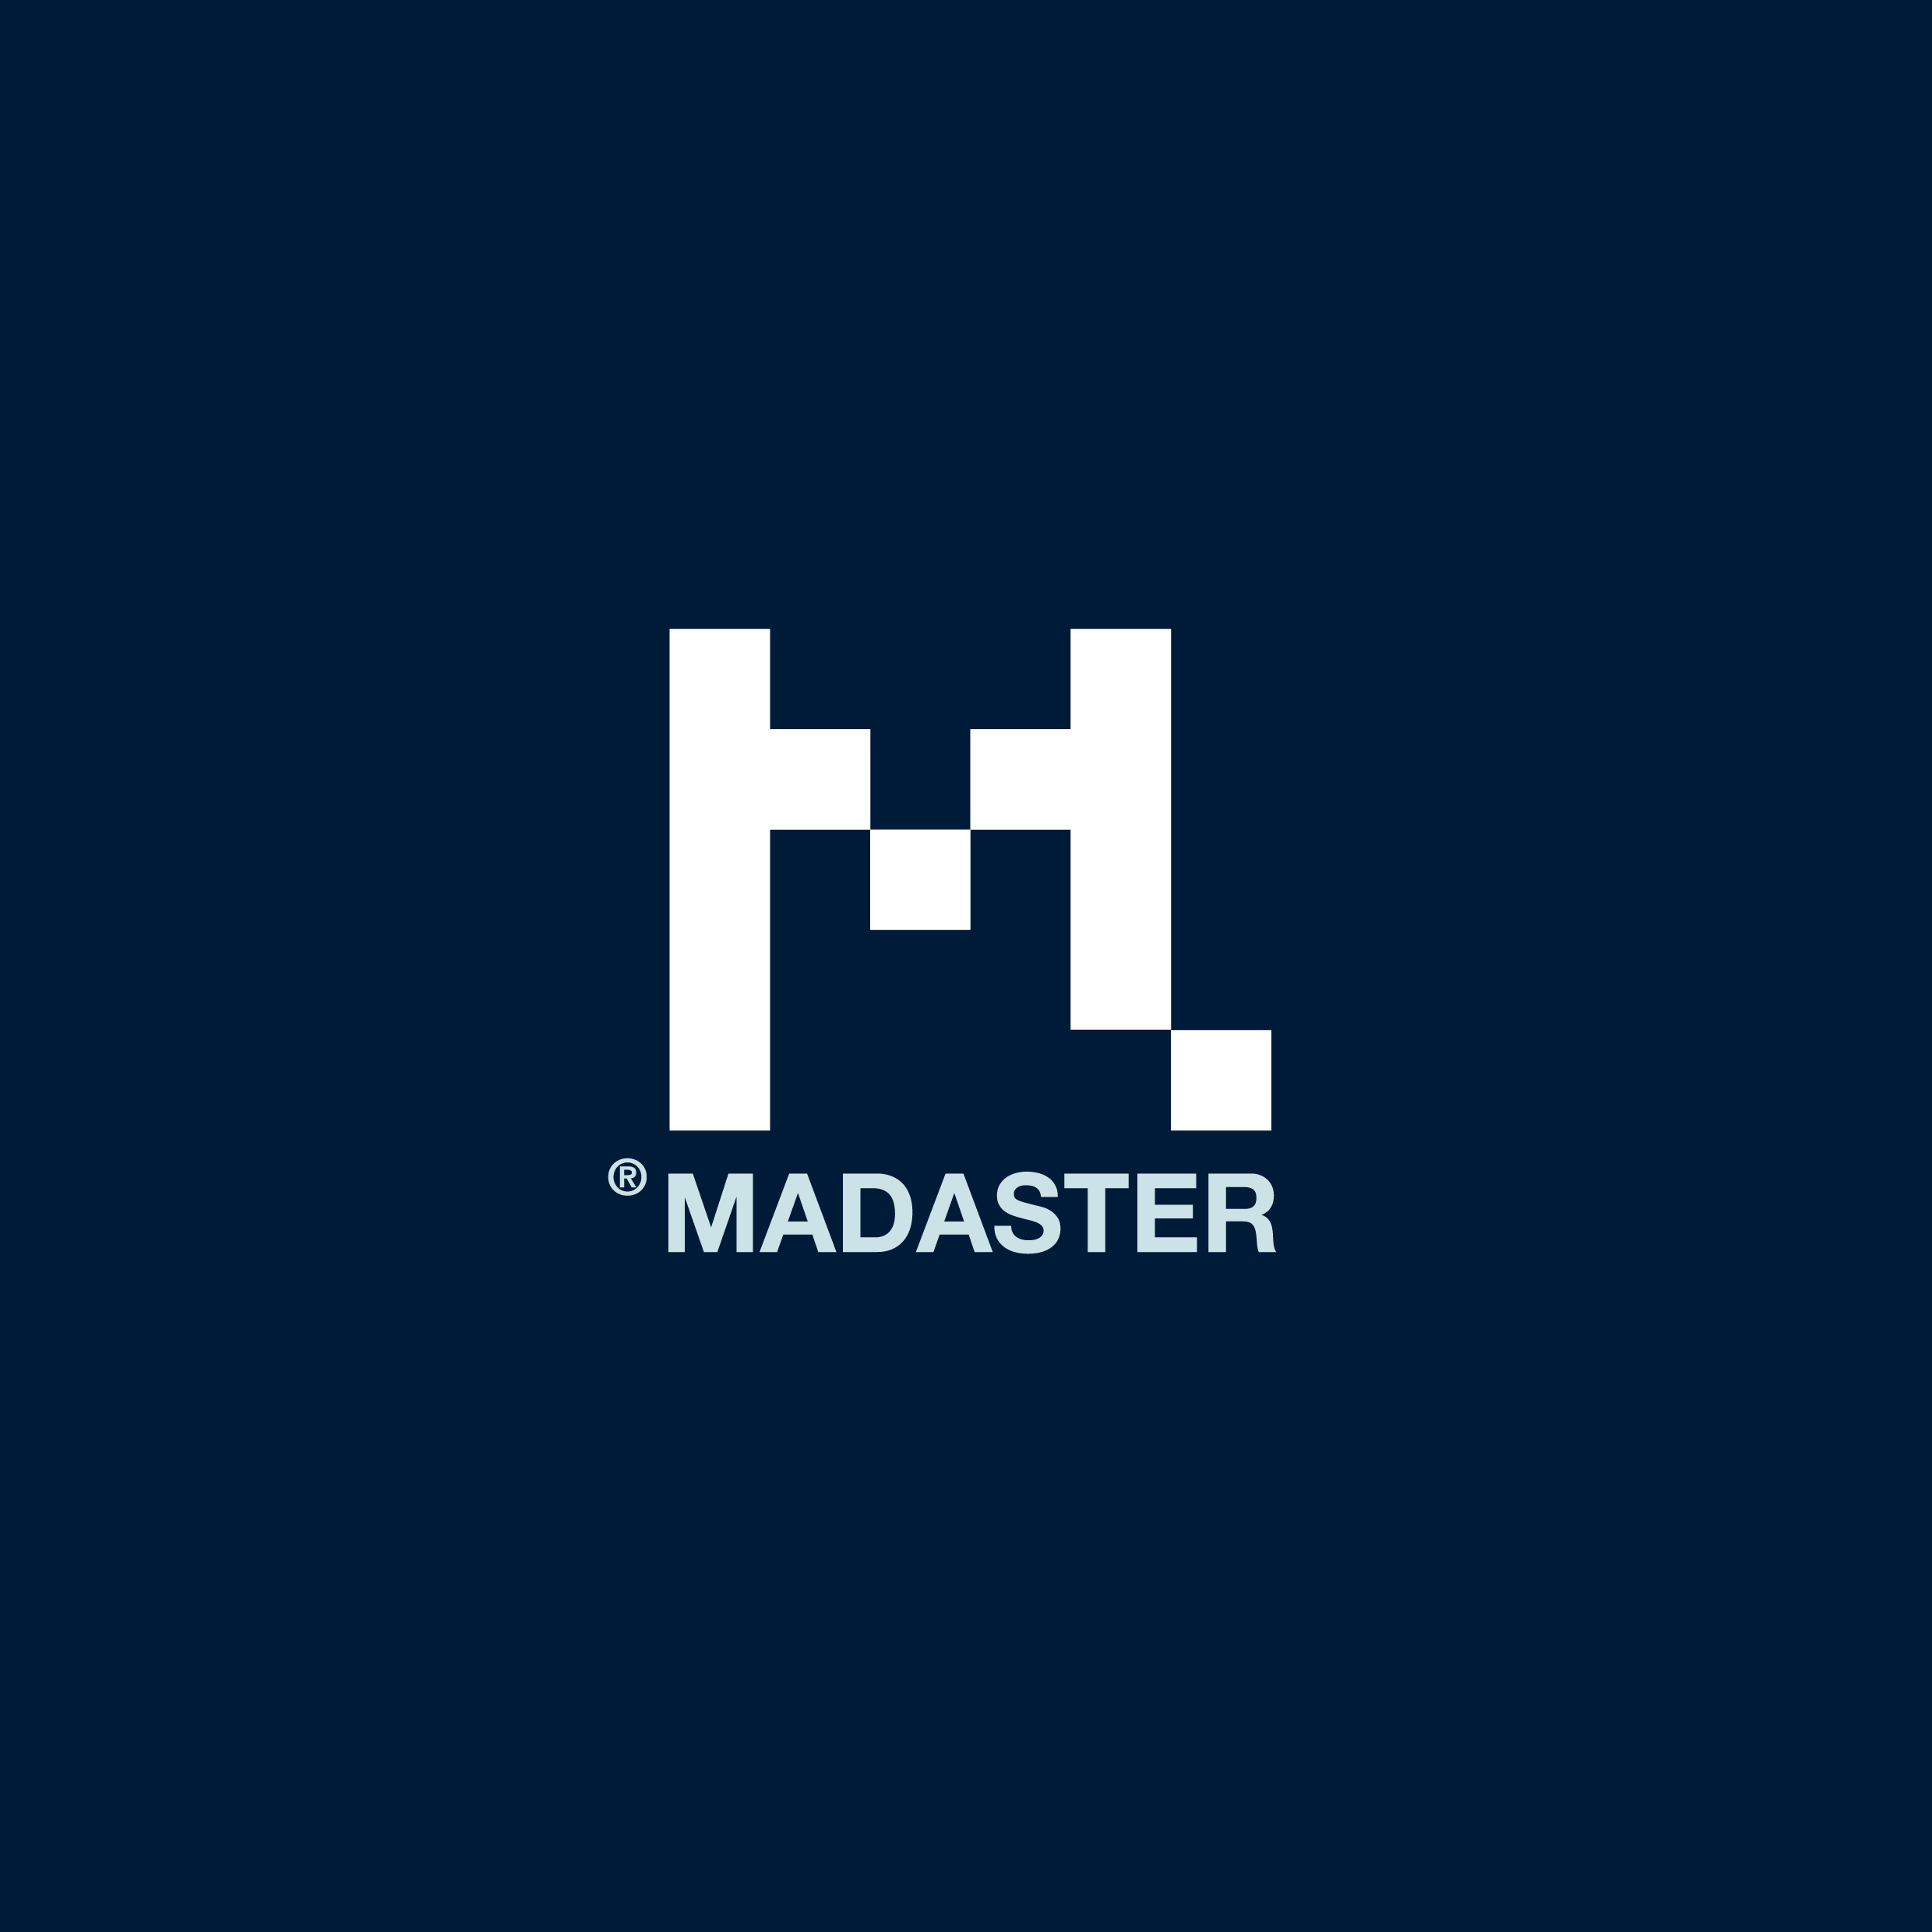 Madaster logo